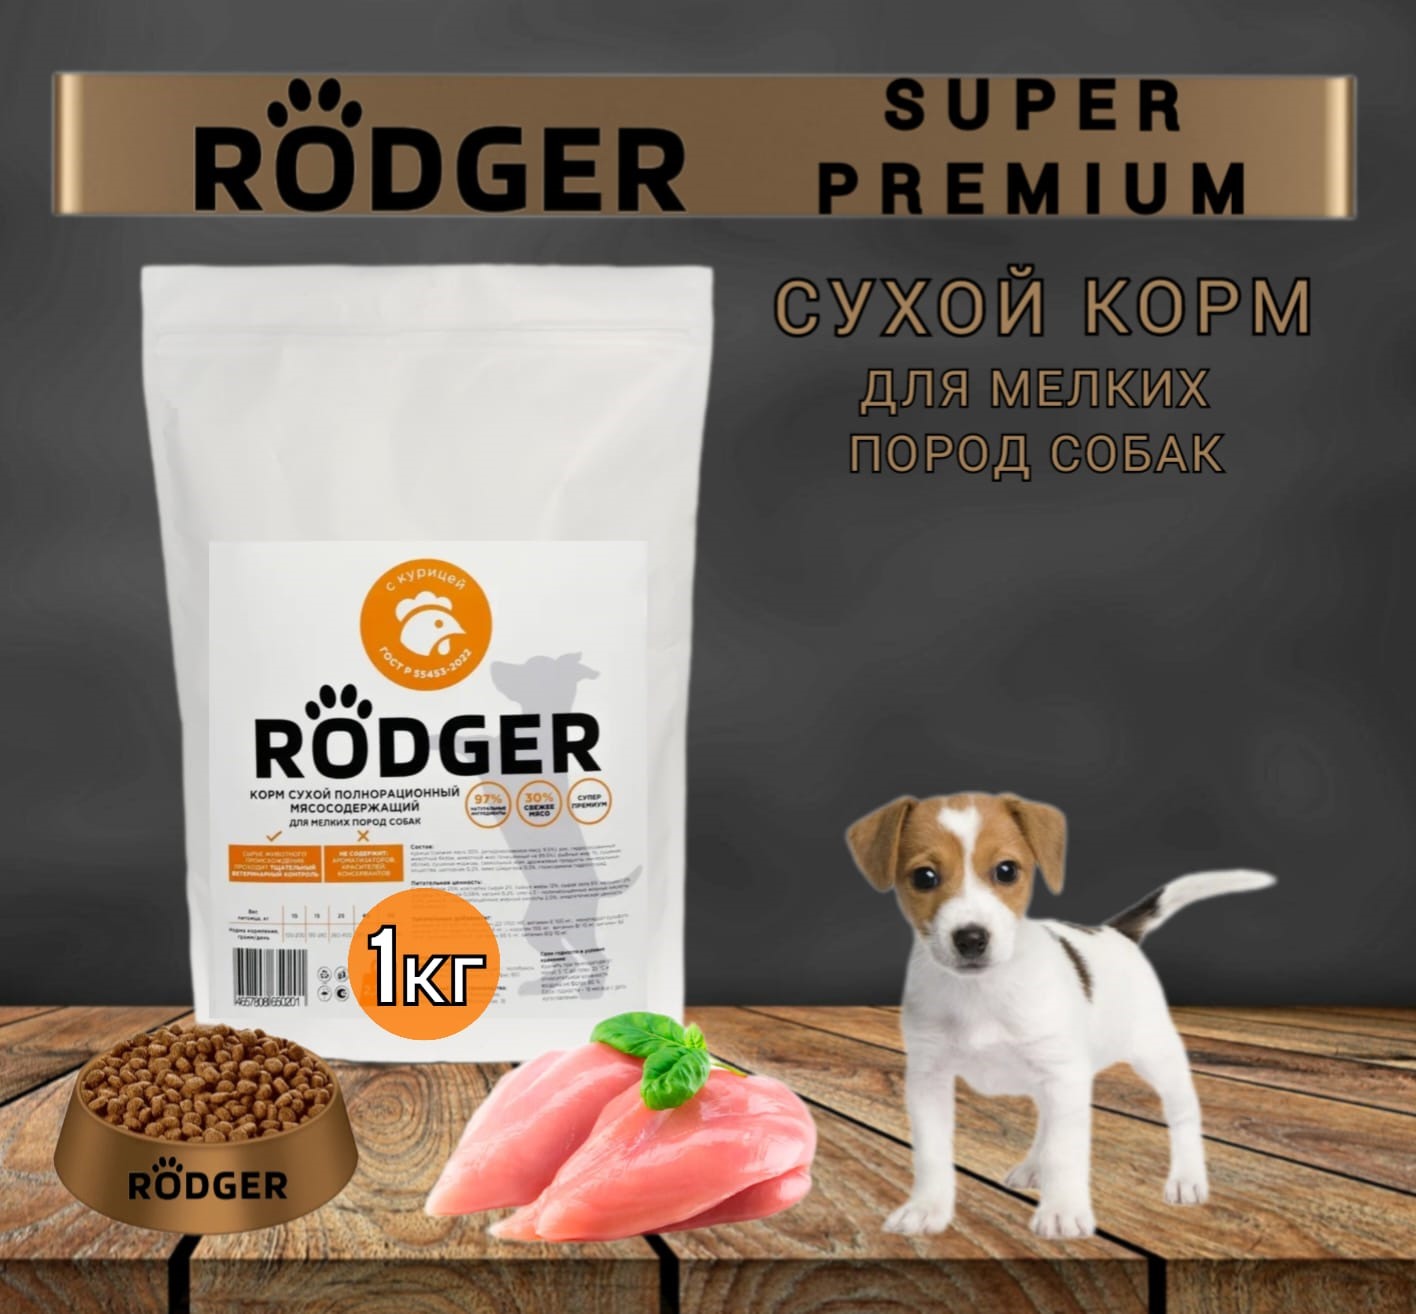 Сухой корм для собак RODGER Super Premium, для мелких пород, курица, 1 кг